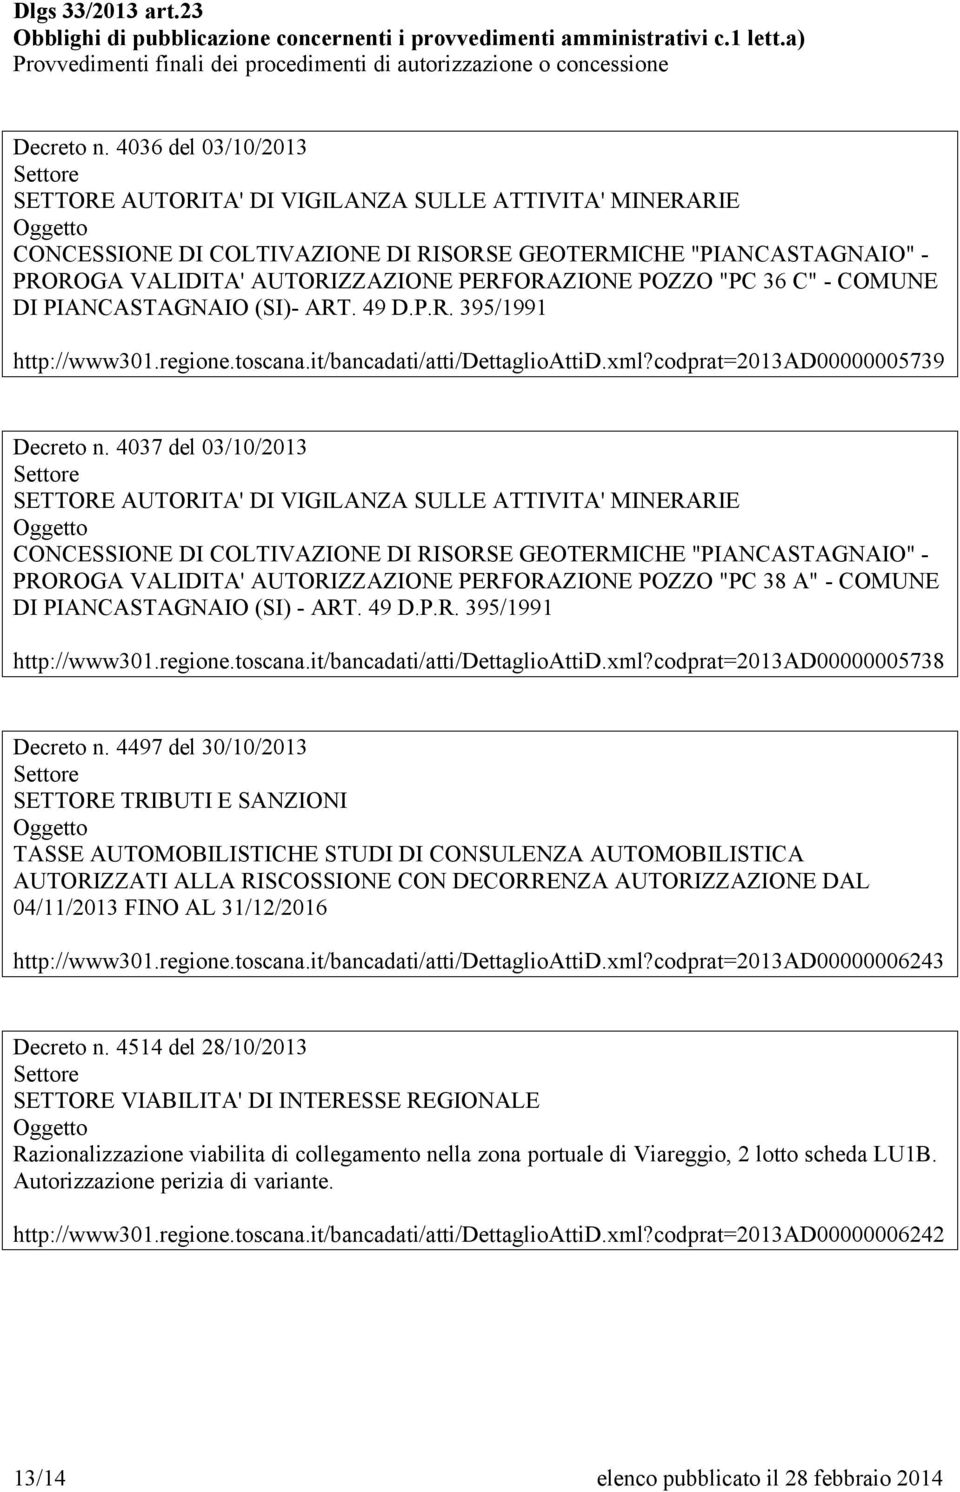 4037 del 03/10/2013 CONCESSIONE DI COLTIVAZIONE DI RISORSE GEOTERMICHE "PIANCASTAGNAIO" - PROROGA VALIDITA' AUTORIZZAZIONE PERFORAZIONE POZZO "PC 38 A" - COMUNE DI PIANCASTAGNAIO (SI) - ART. 49 D.P.R. 395/1991 http://www301.